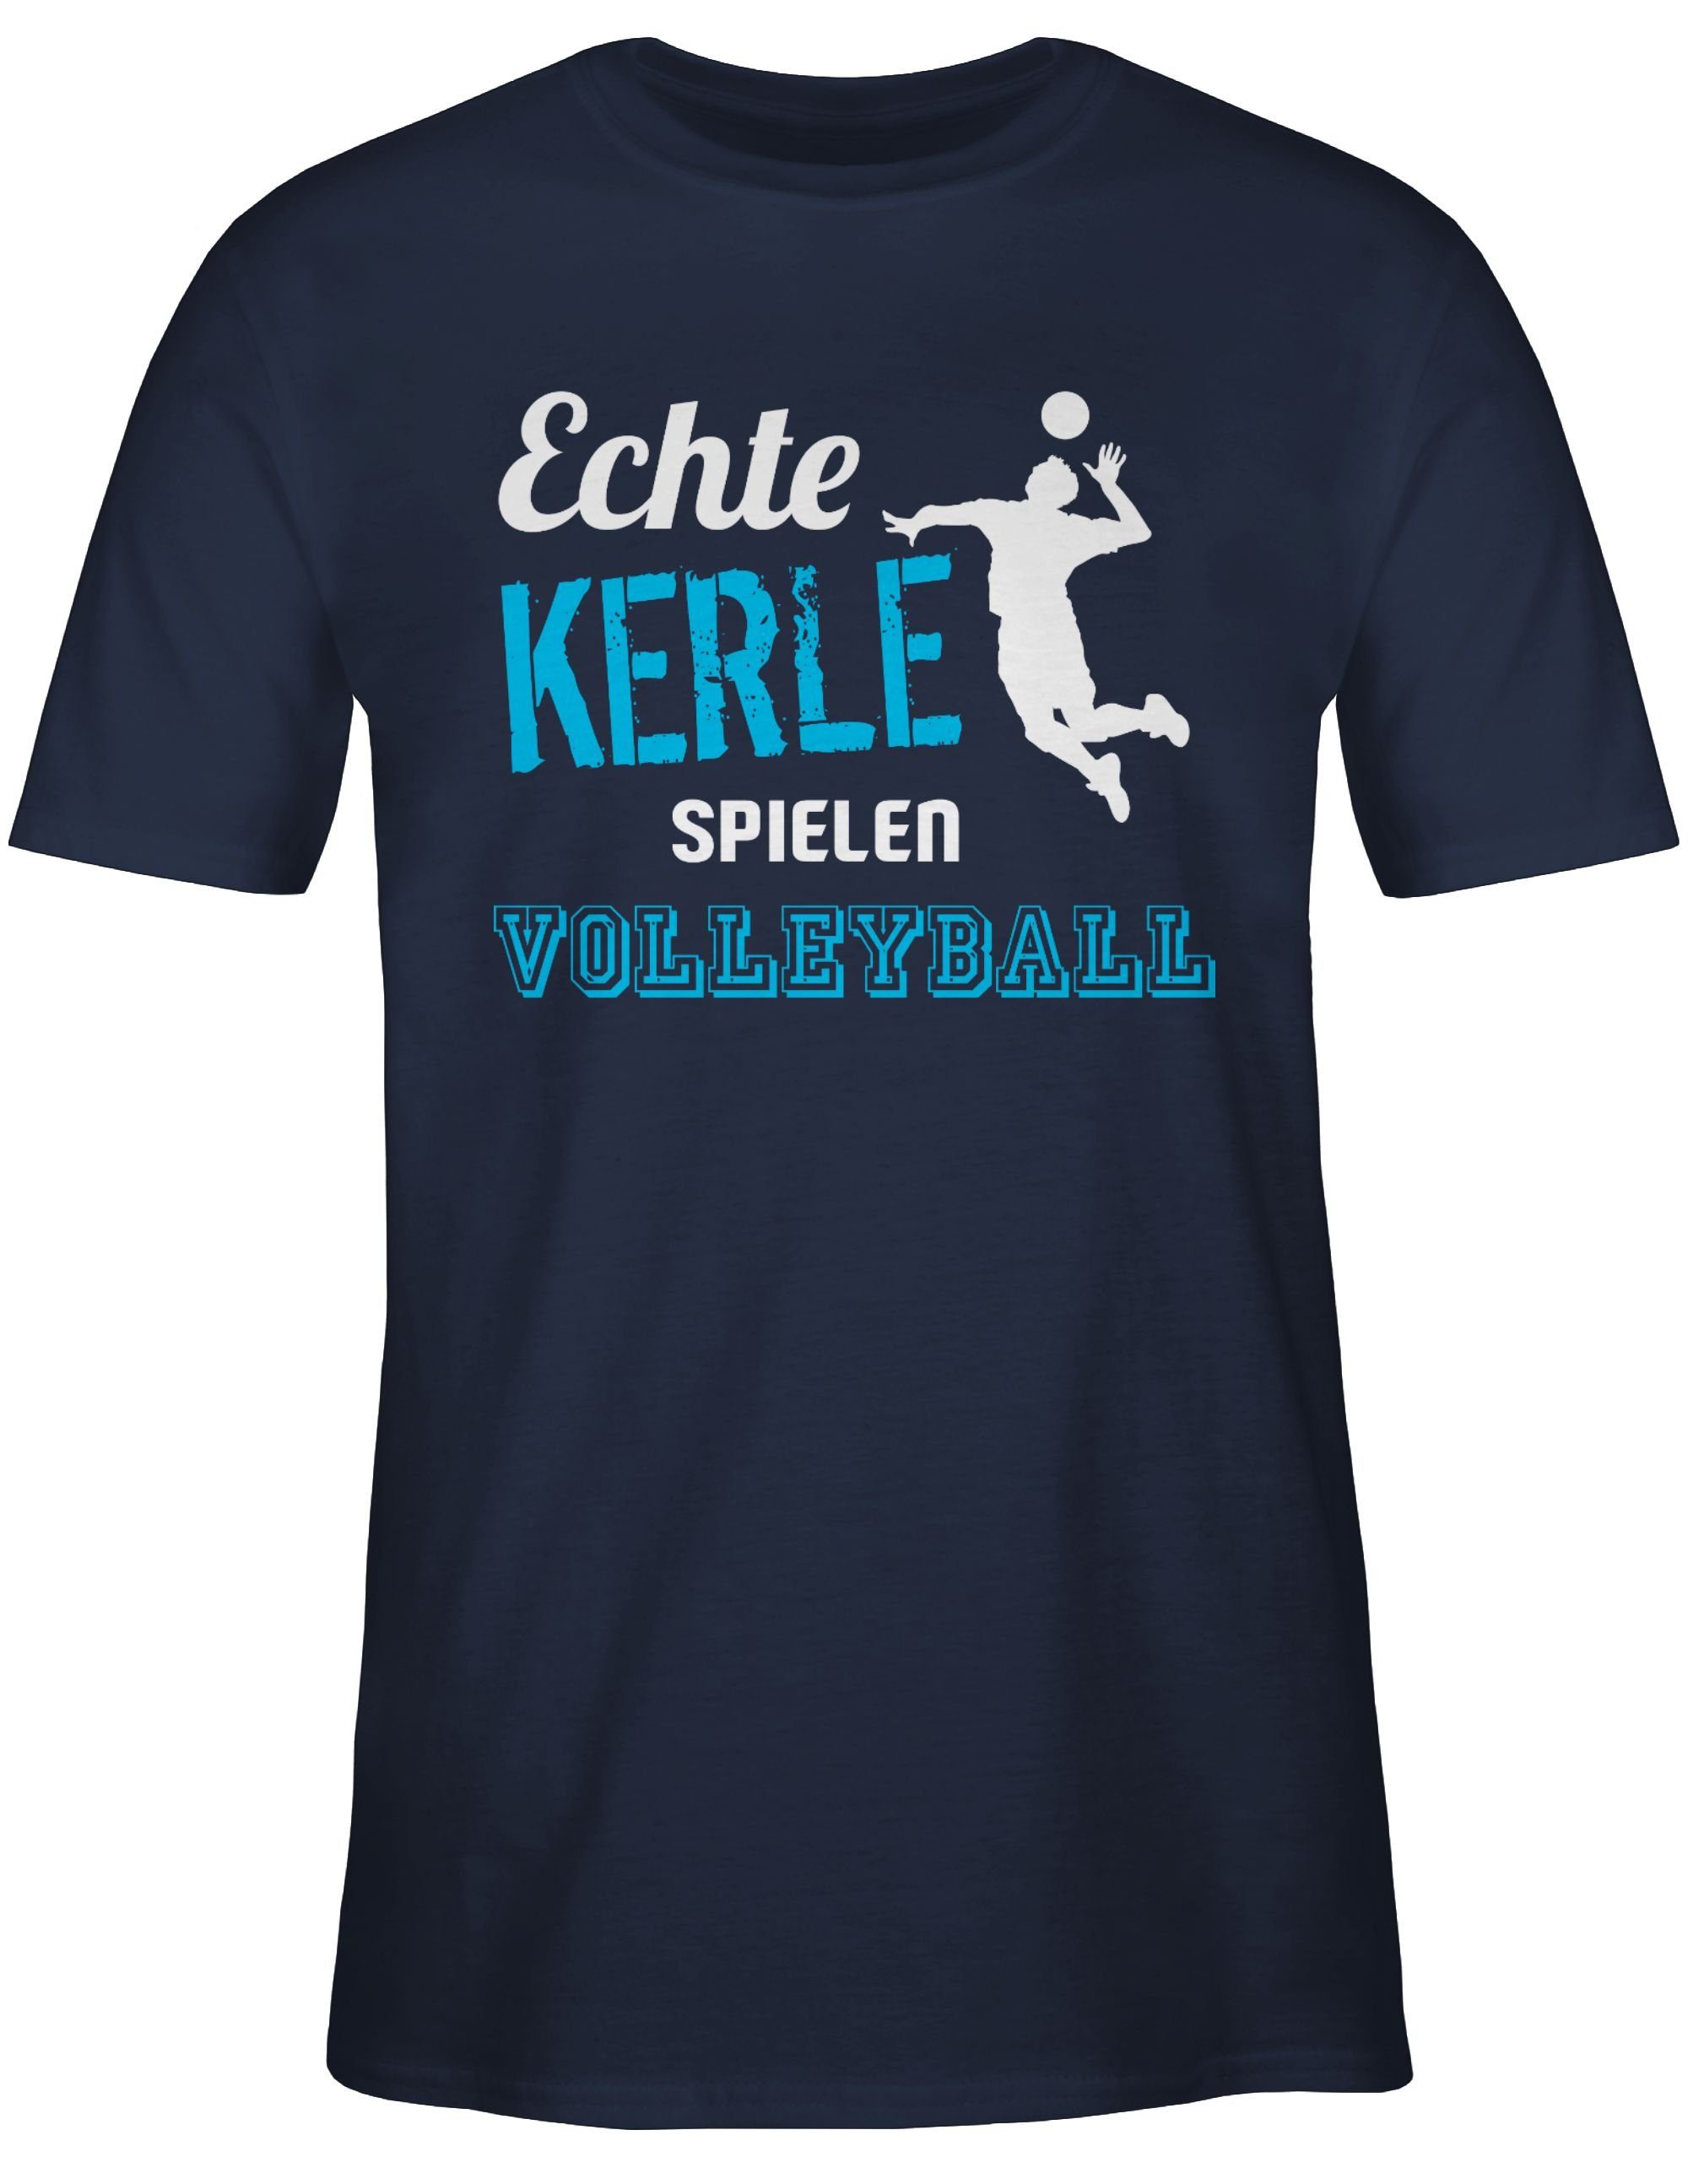 Shirtracer T-Shirt spielen 1 Volleyball Kerle Volleyball Geschenke Blau Navy Echte